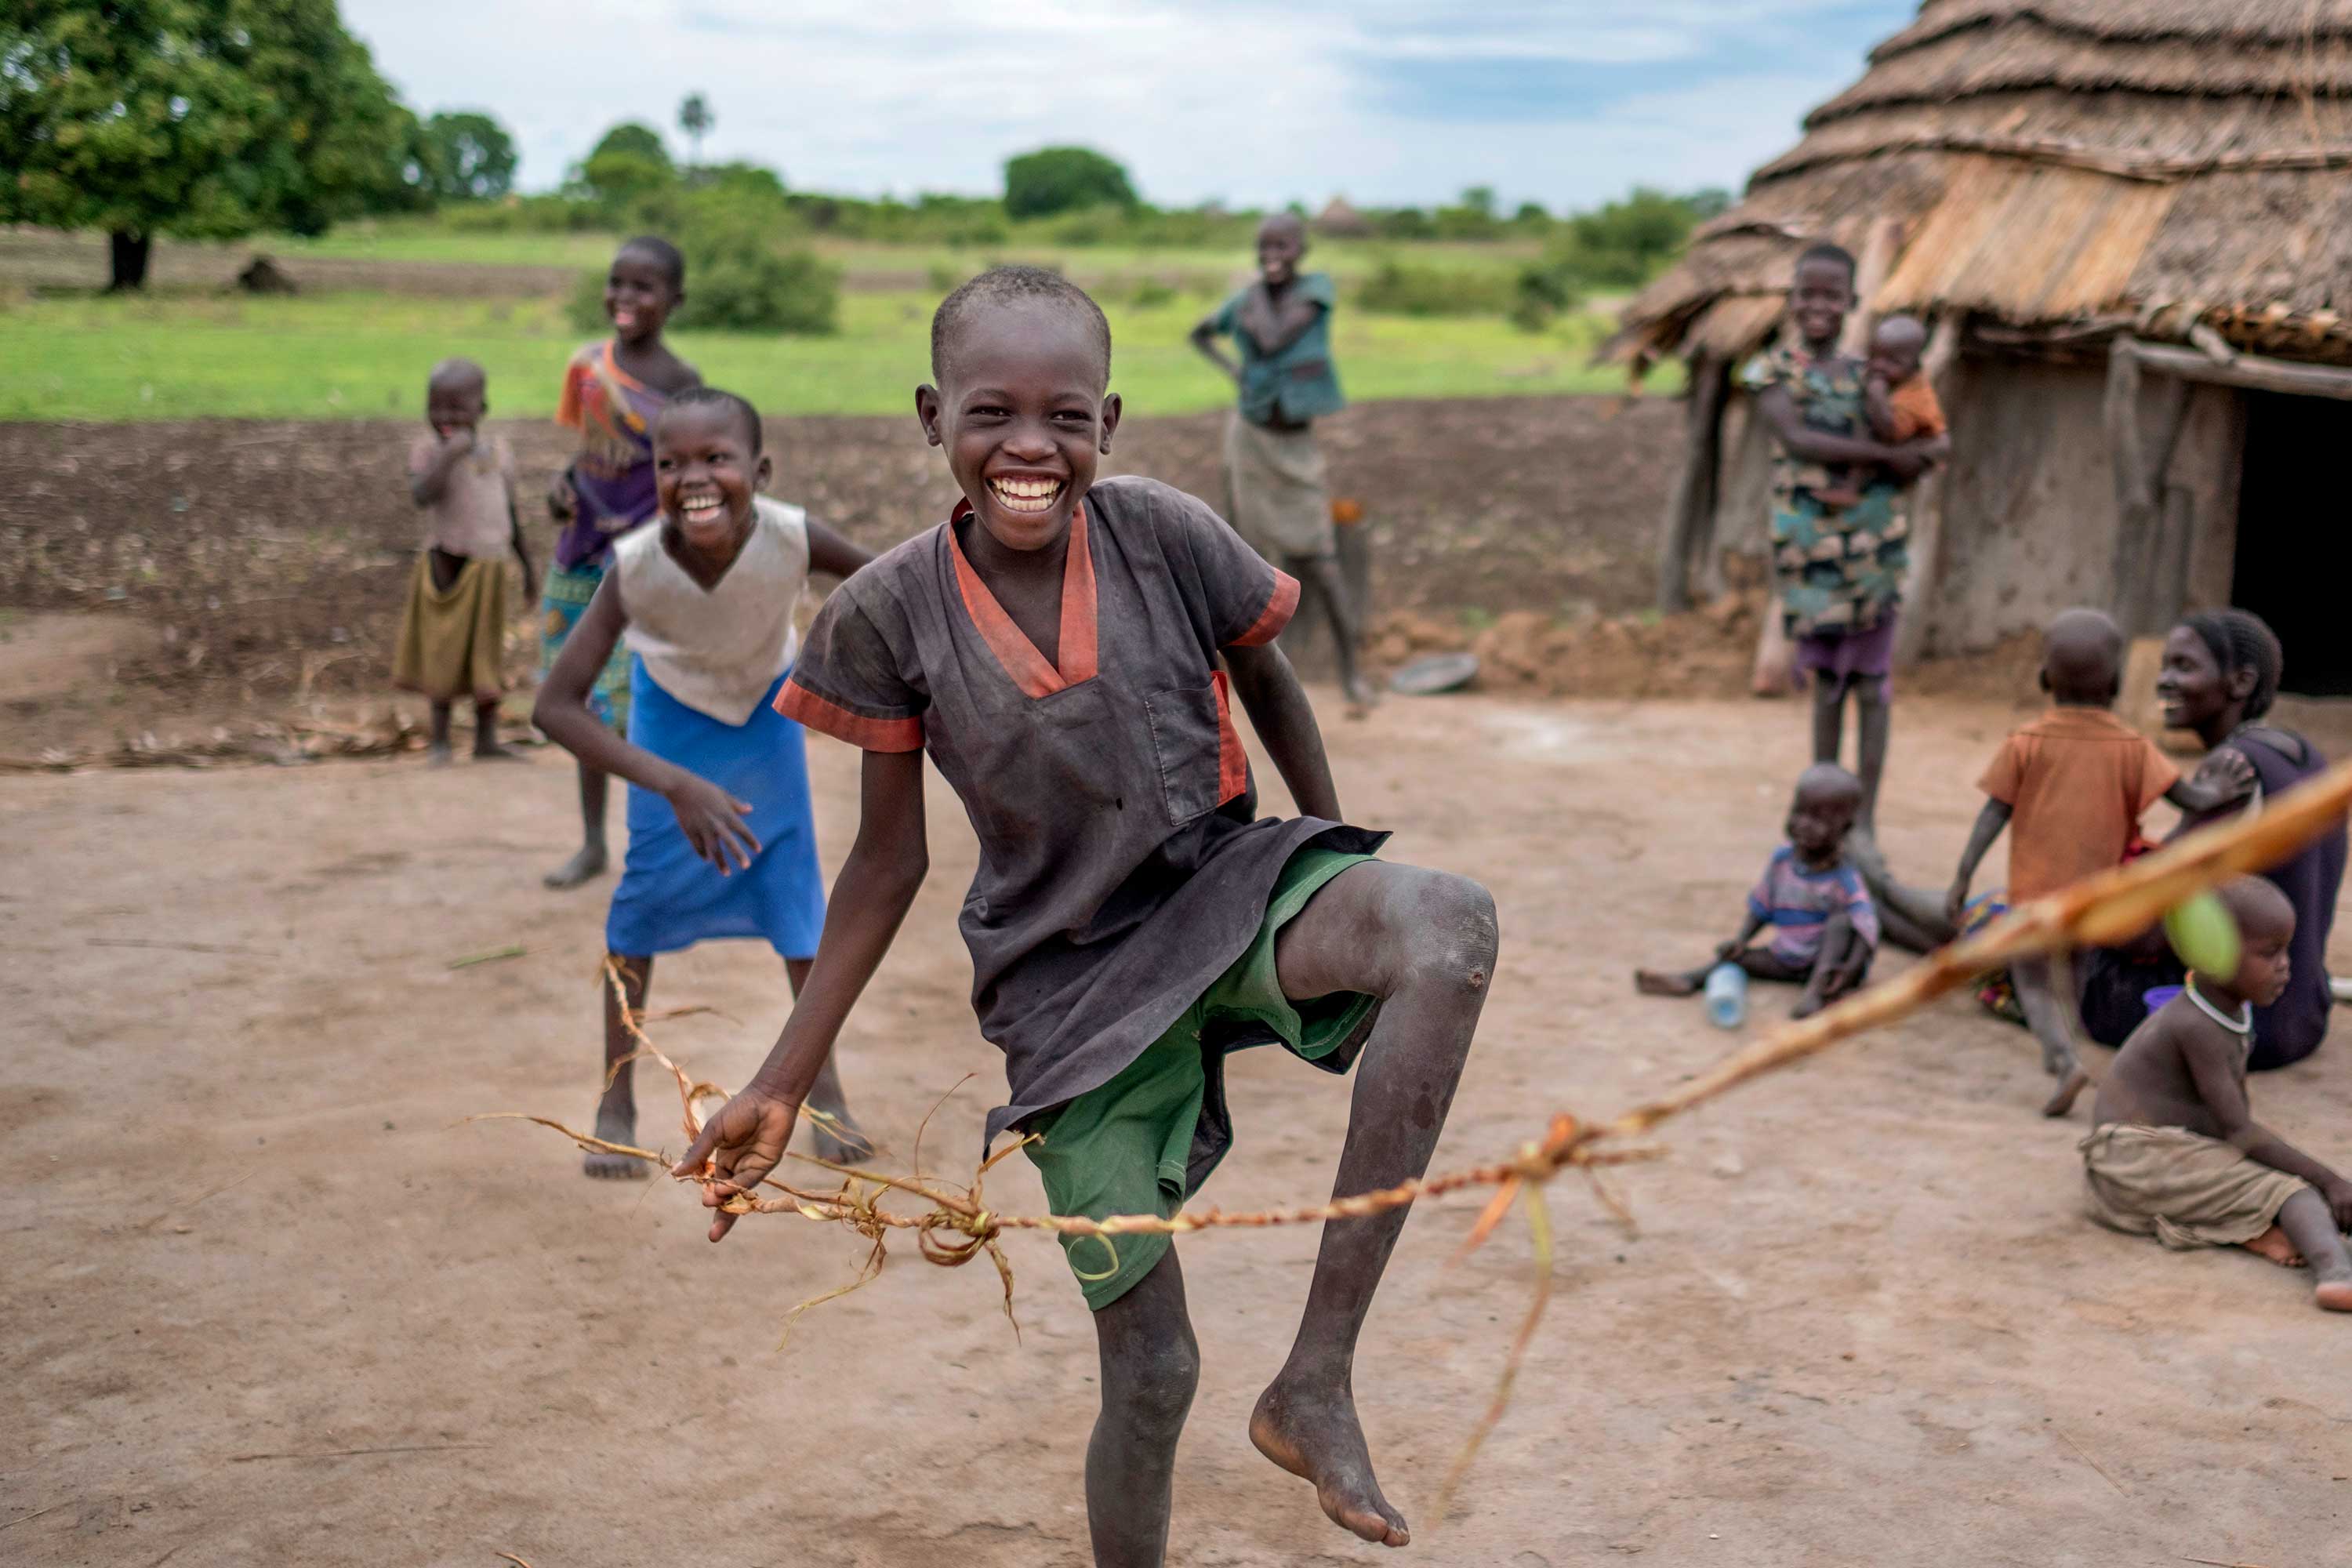 Children playing in village